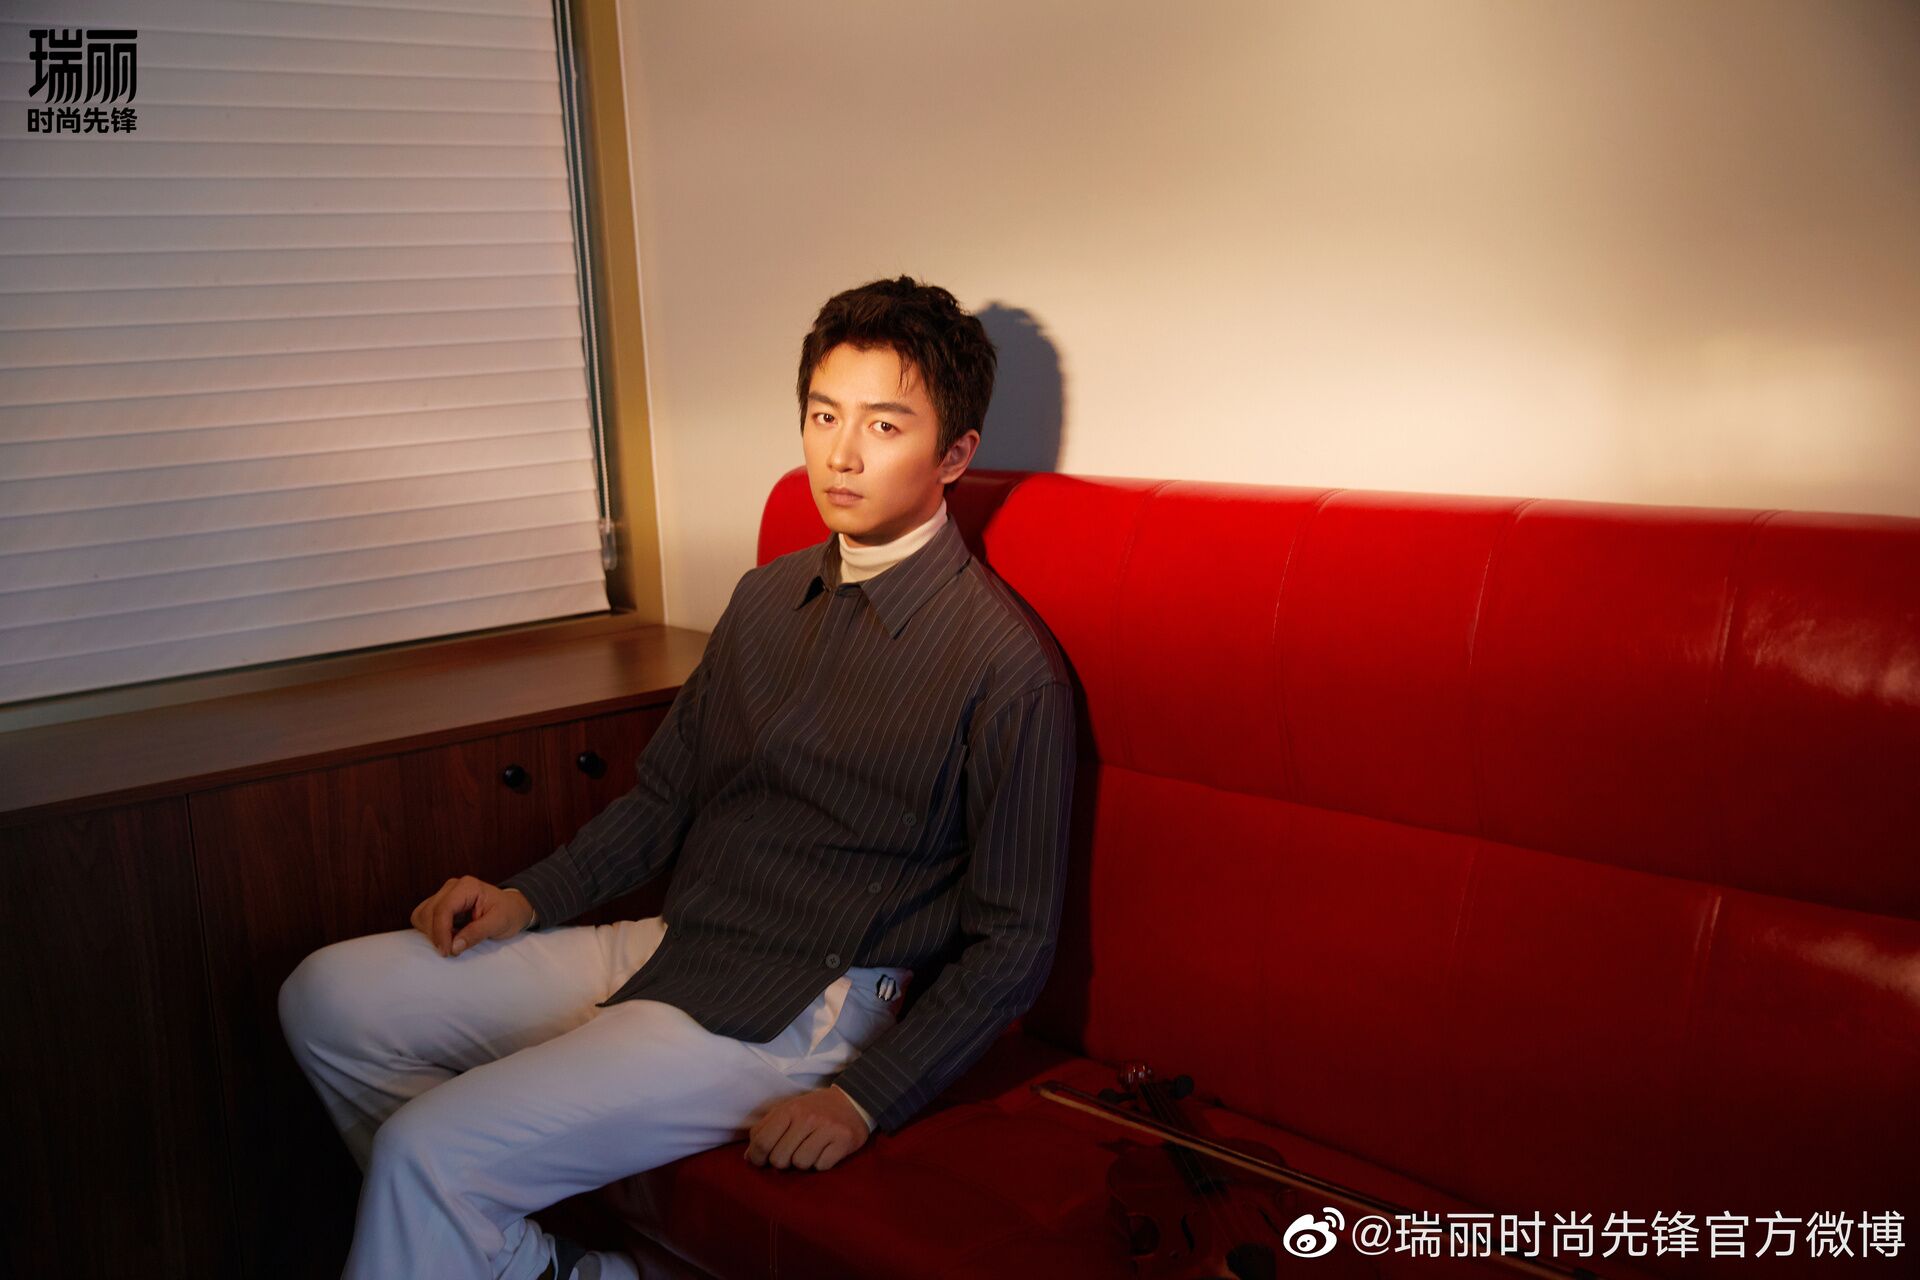 Chen Xiao Photo, HD Image, Wallpaper - CPOP HOME